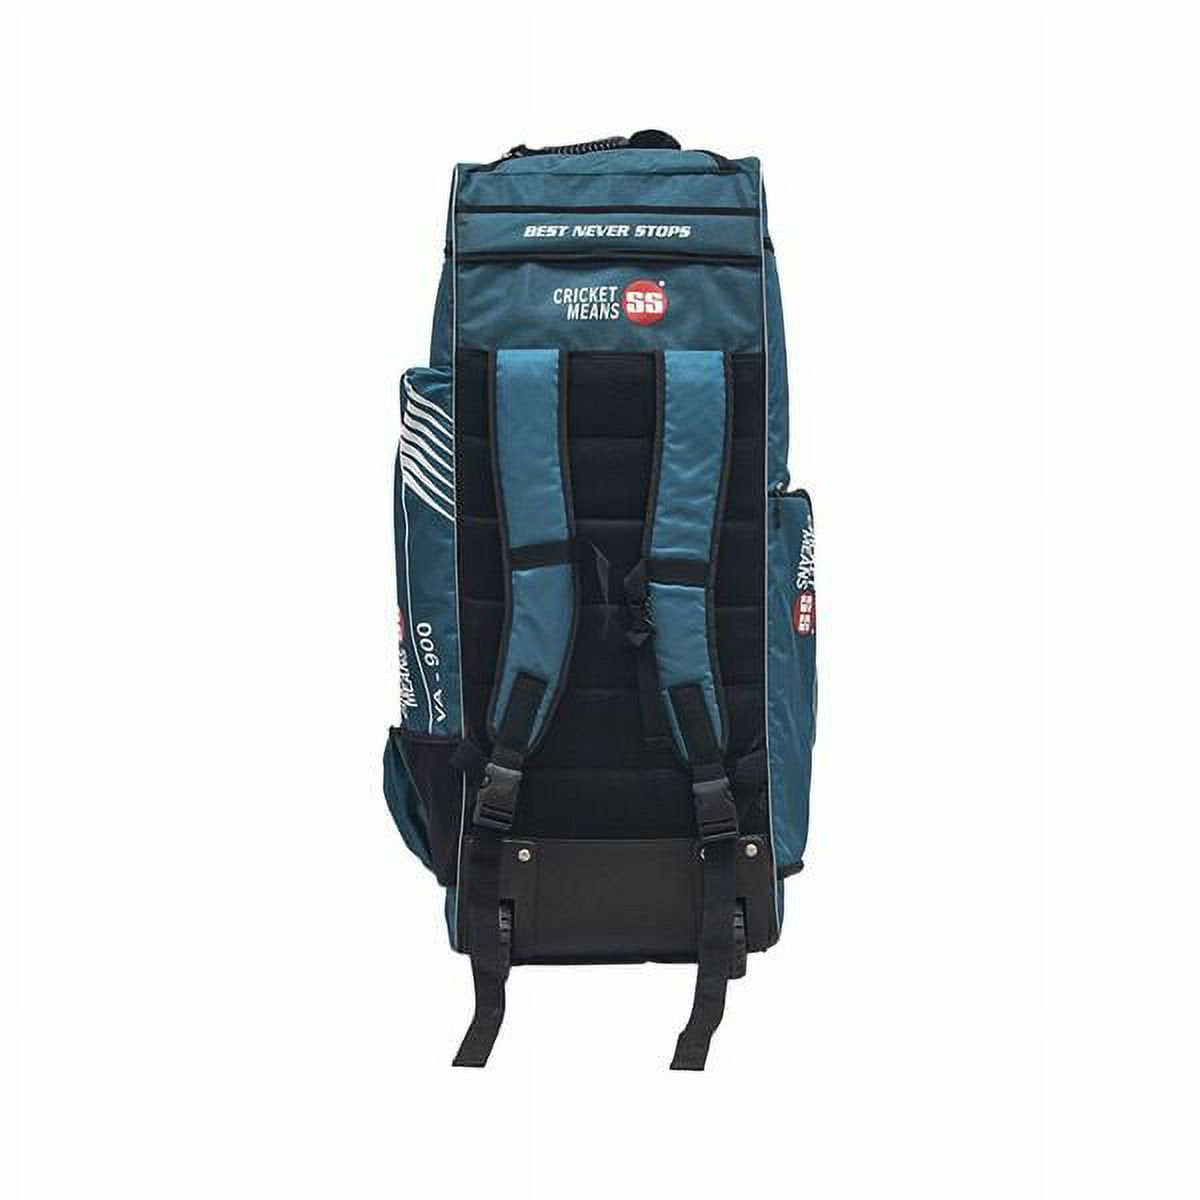 SS VA-900 Duffle Wheelie Kit Bag